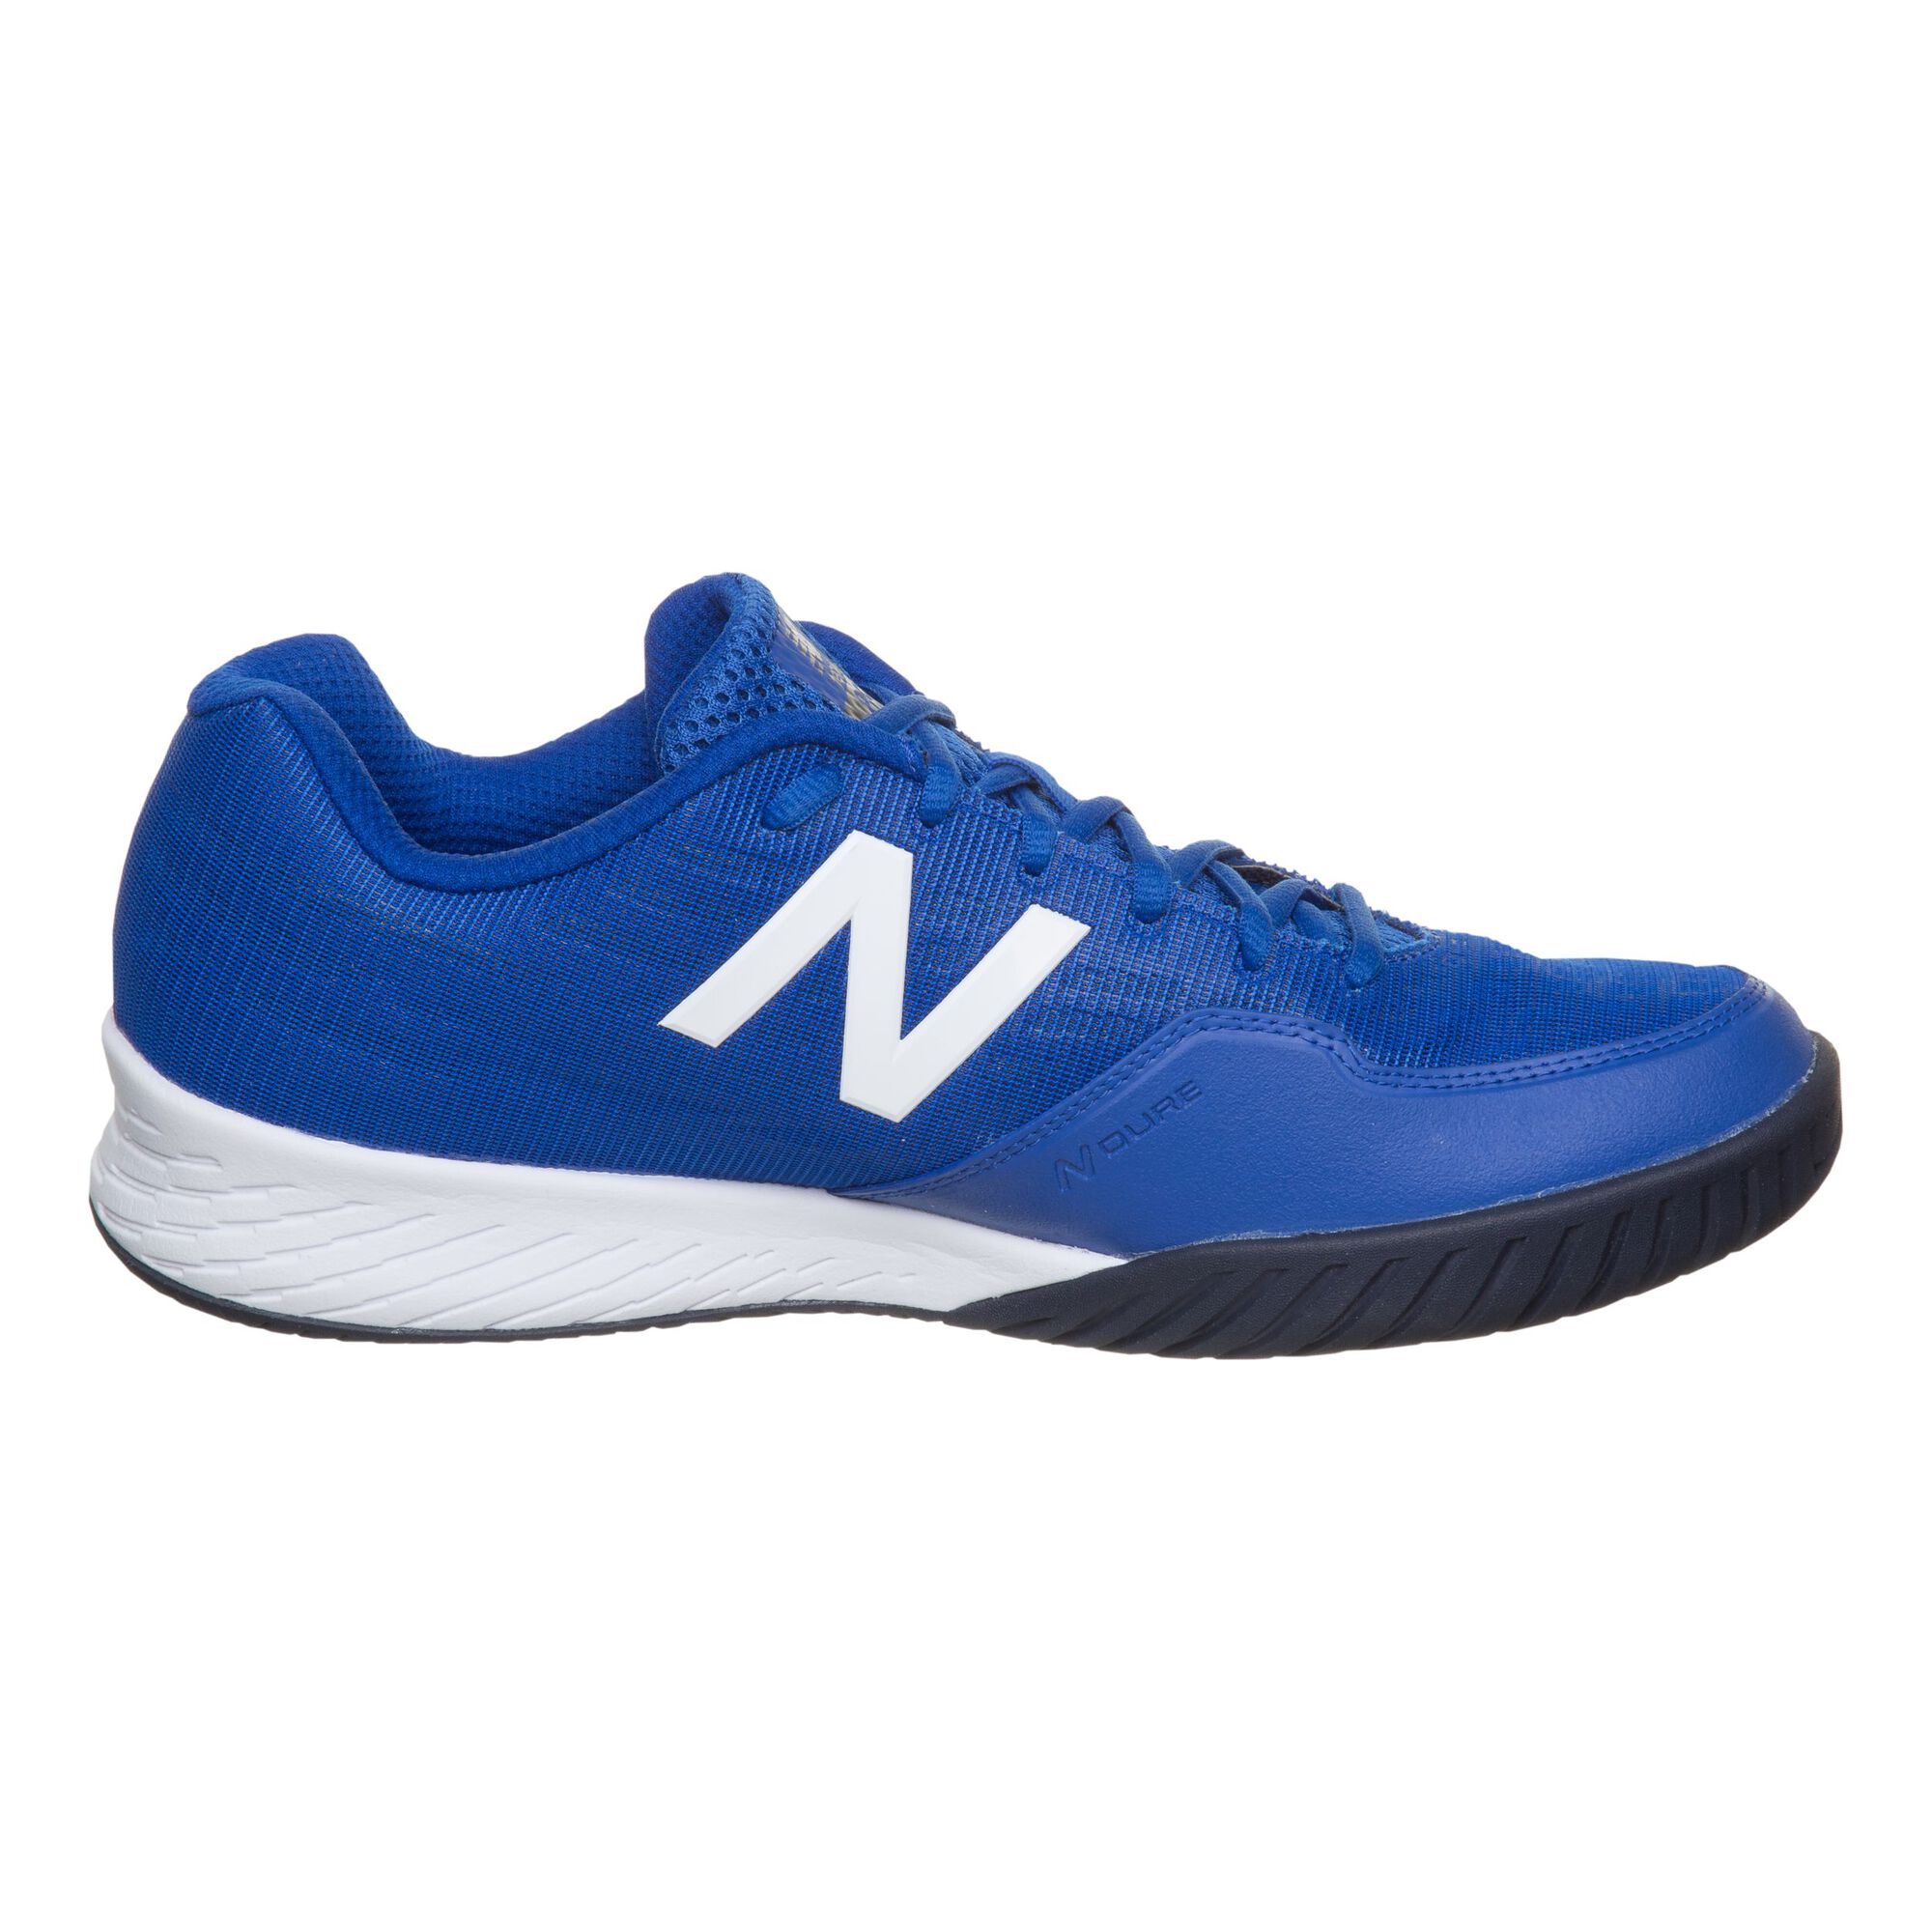 Buy New Balance 896 V3 All Court Shoe Men Blue, White online | Tennis ...